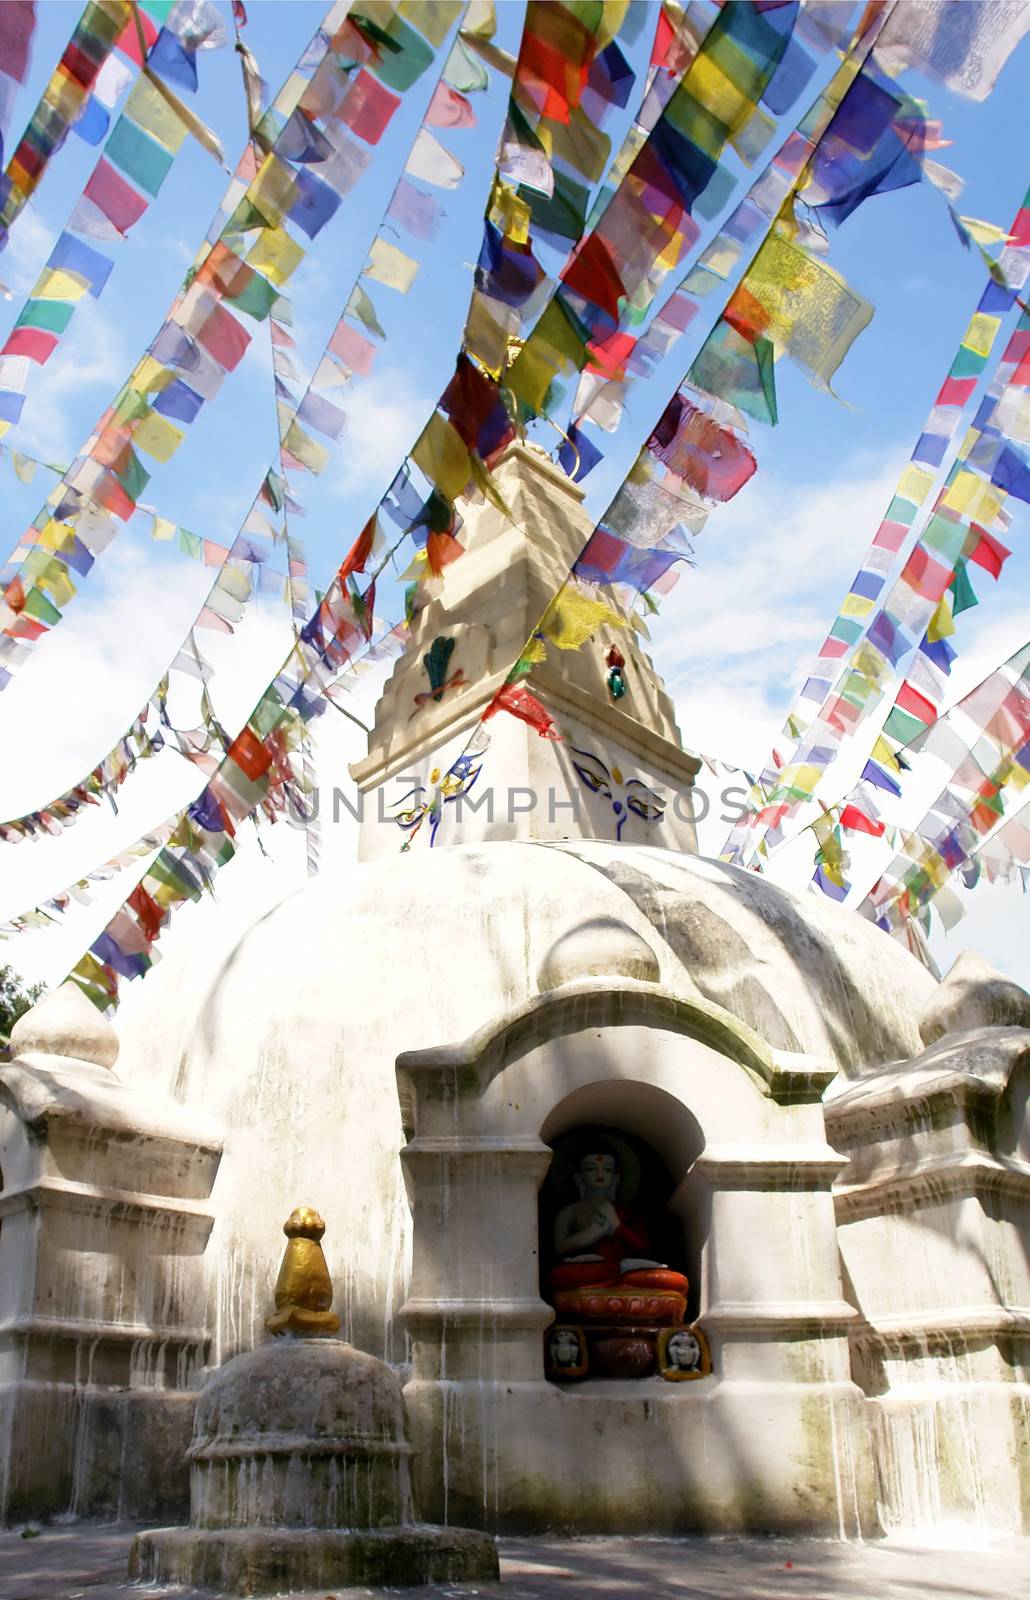 Mantras at Swayambhunath stupa temple on the outskirts of Kathmandu, Nepal